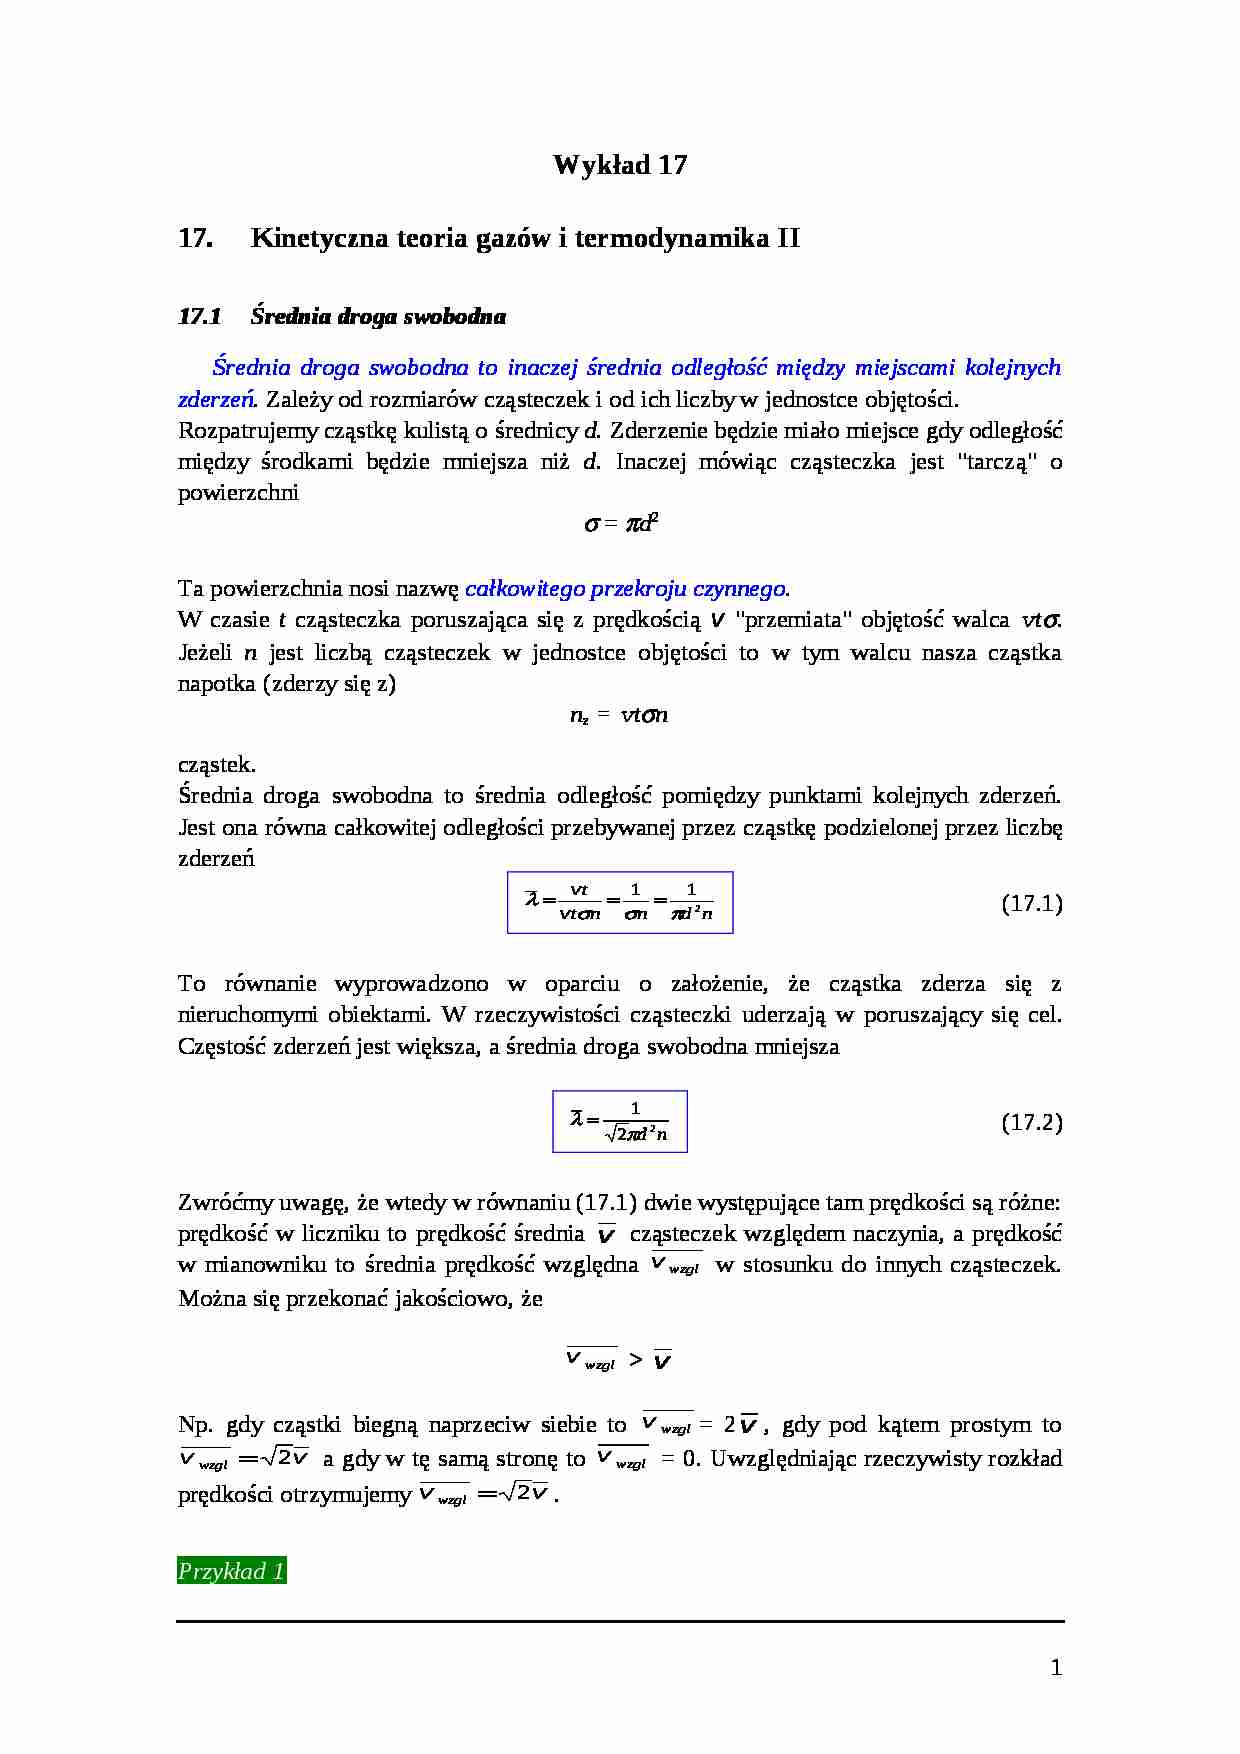 Kinetyczna teoria gazów i termodynamika II - strona 1